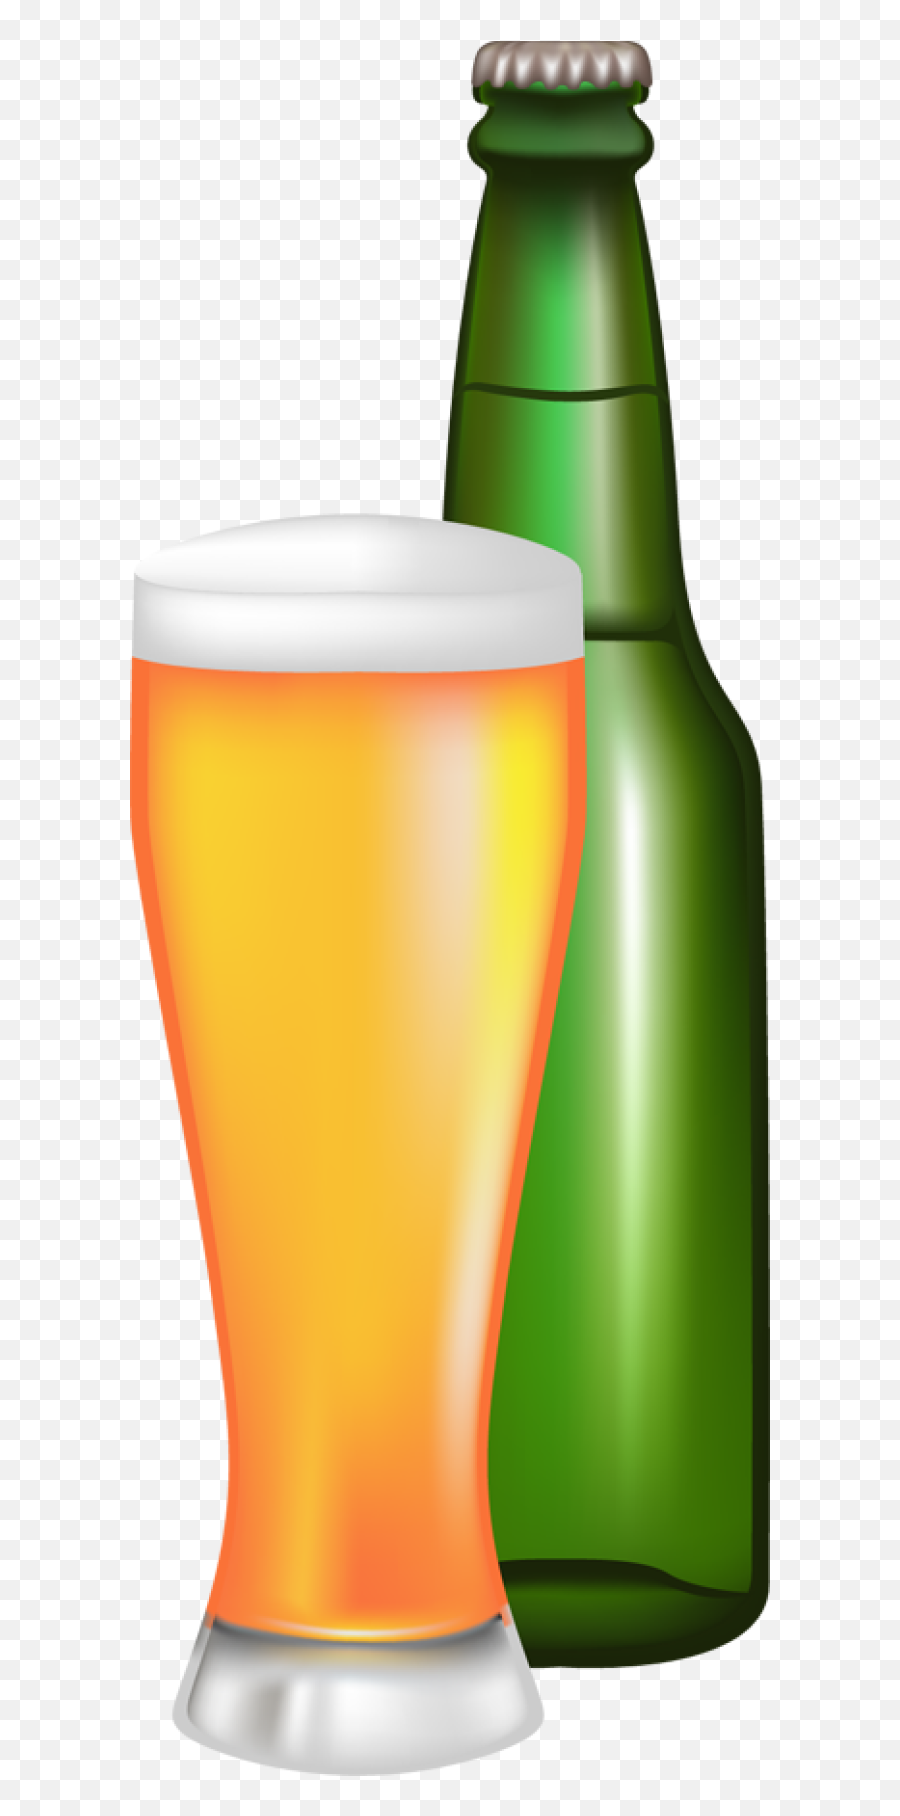 Pictures Of Beer - Bottled Beer Clip Art Emoji,Beer Mug Emoji